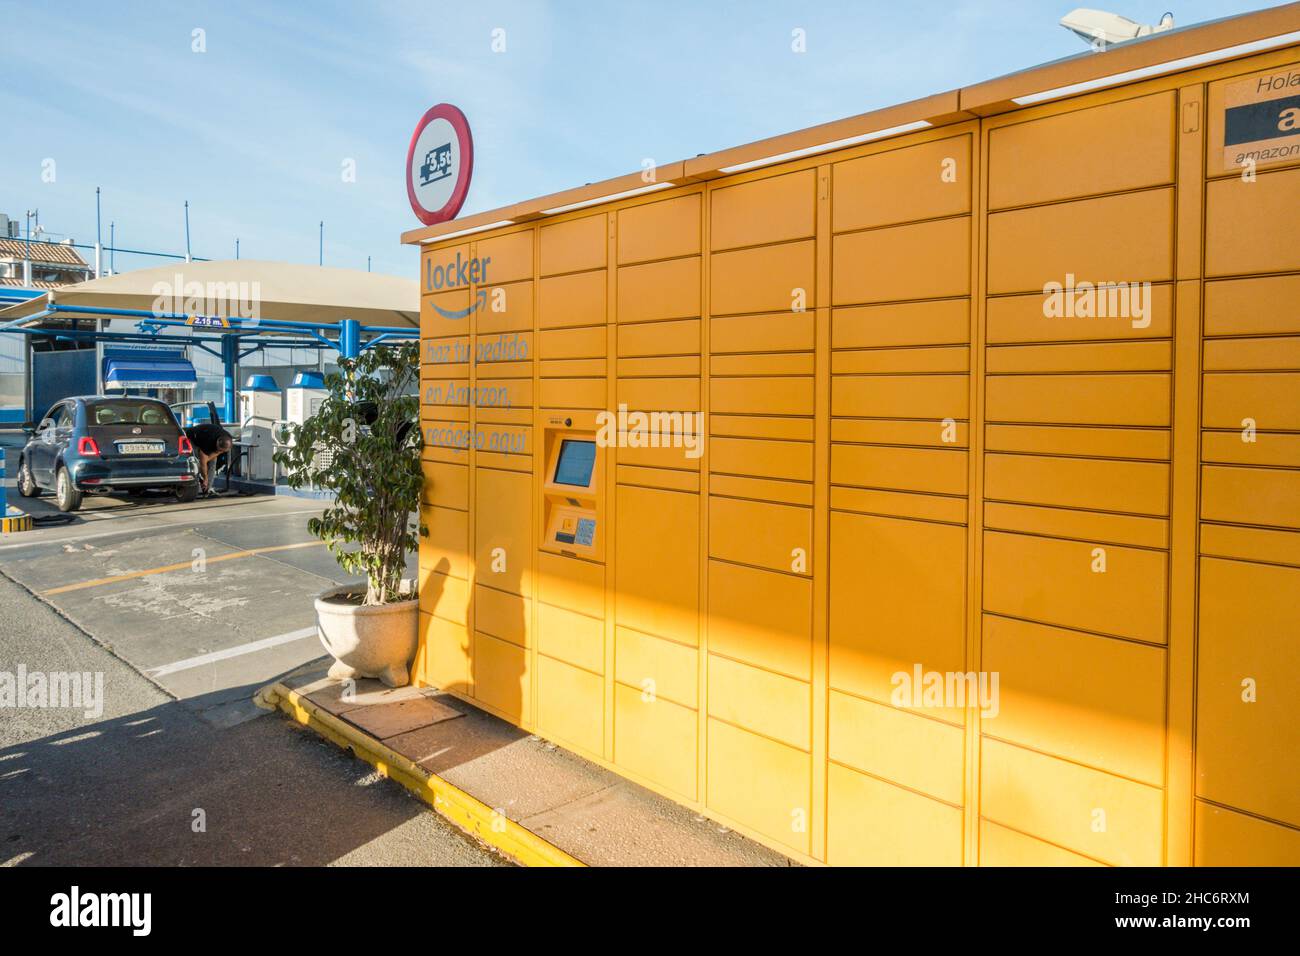 Amazon locker, Liefersystem, das Amazon an öffentlichen Orten zur Abholung und Rückgabe von Paketen verwendet, Andalusien, Spanien. Stockfoto